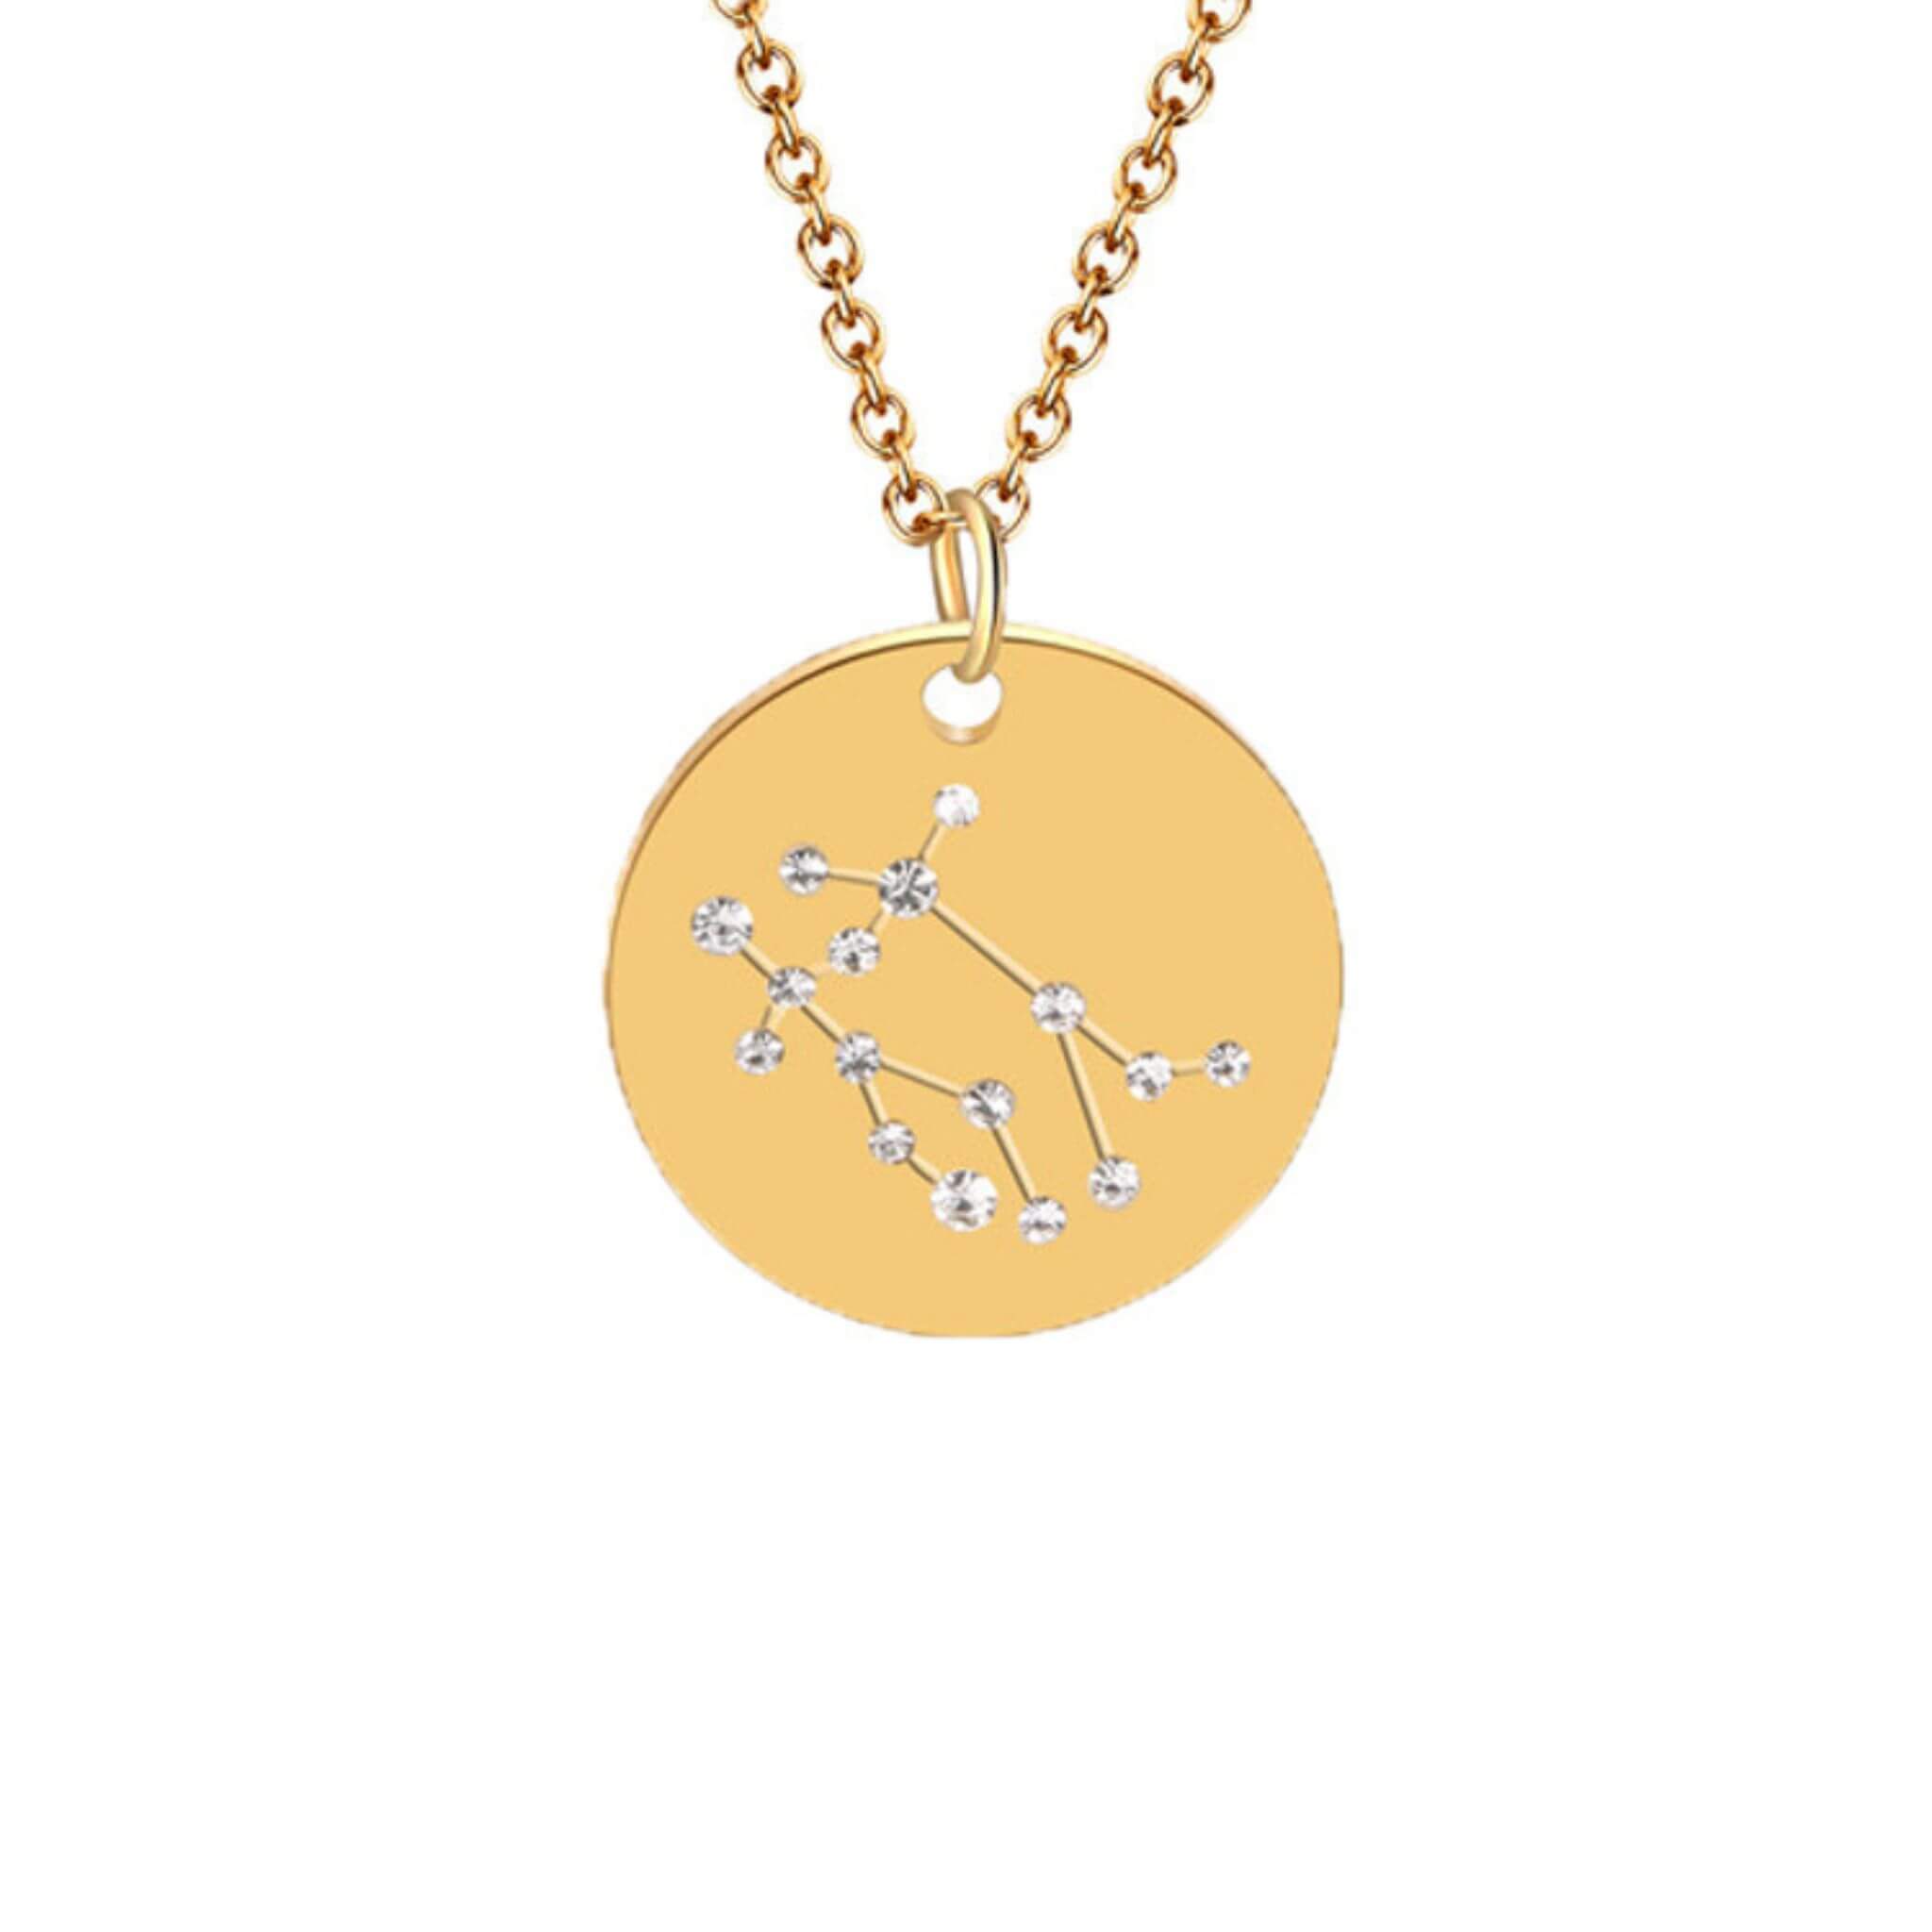 Gemini constellation necklace 